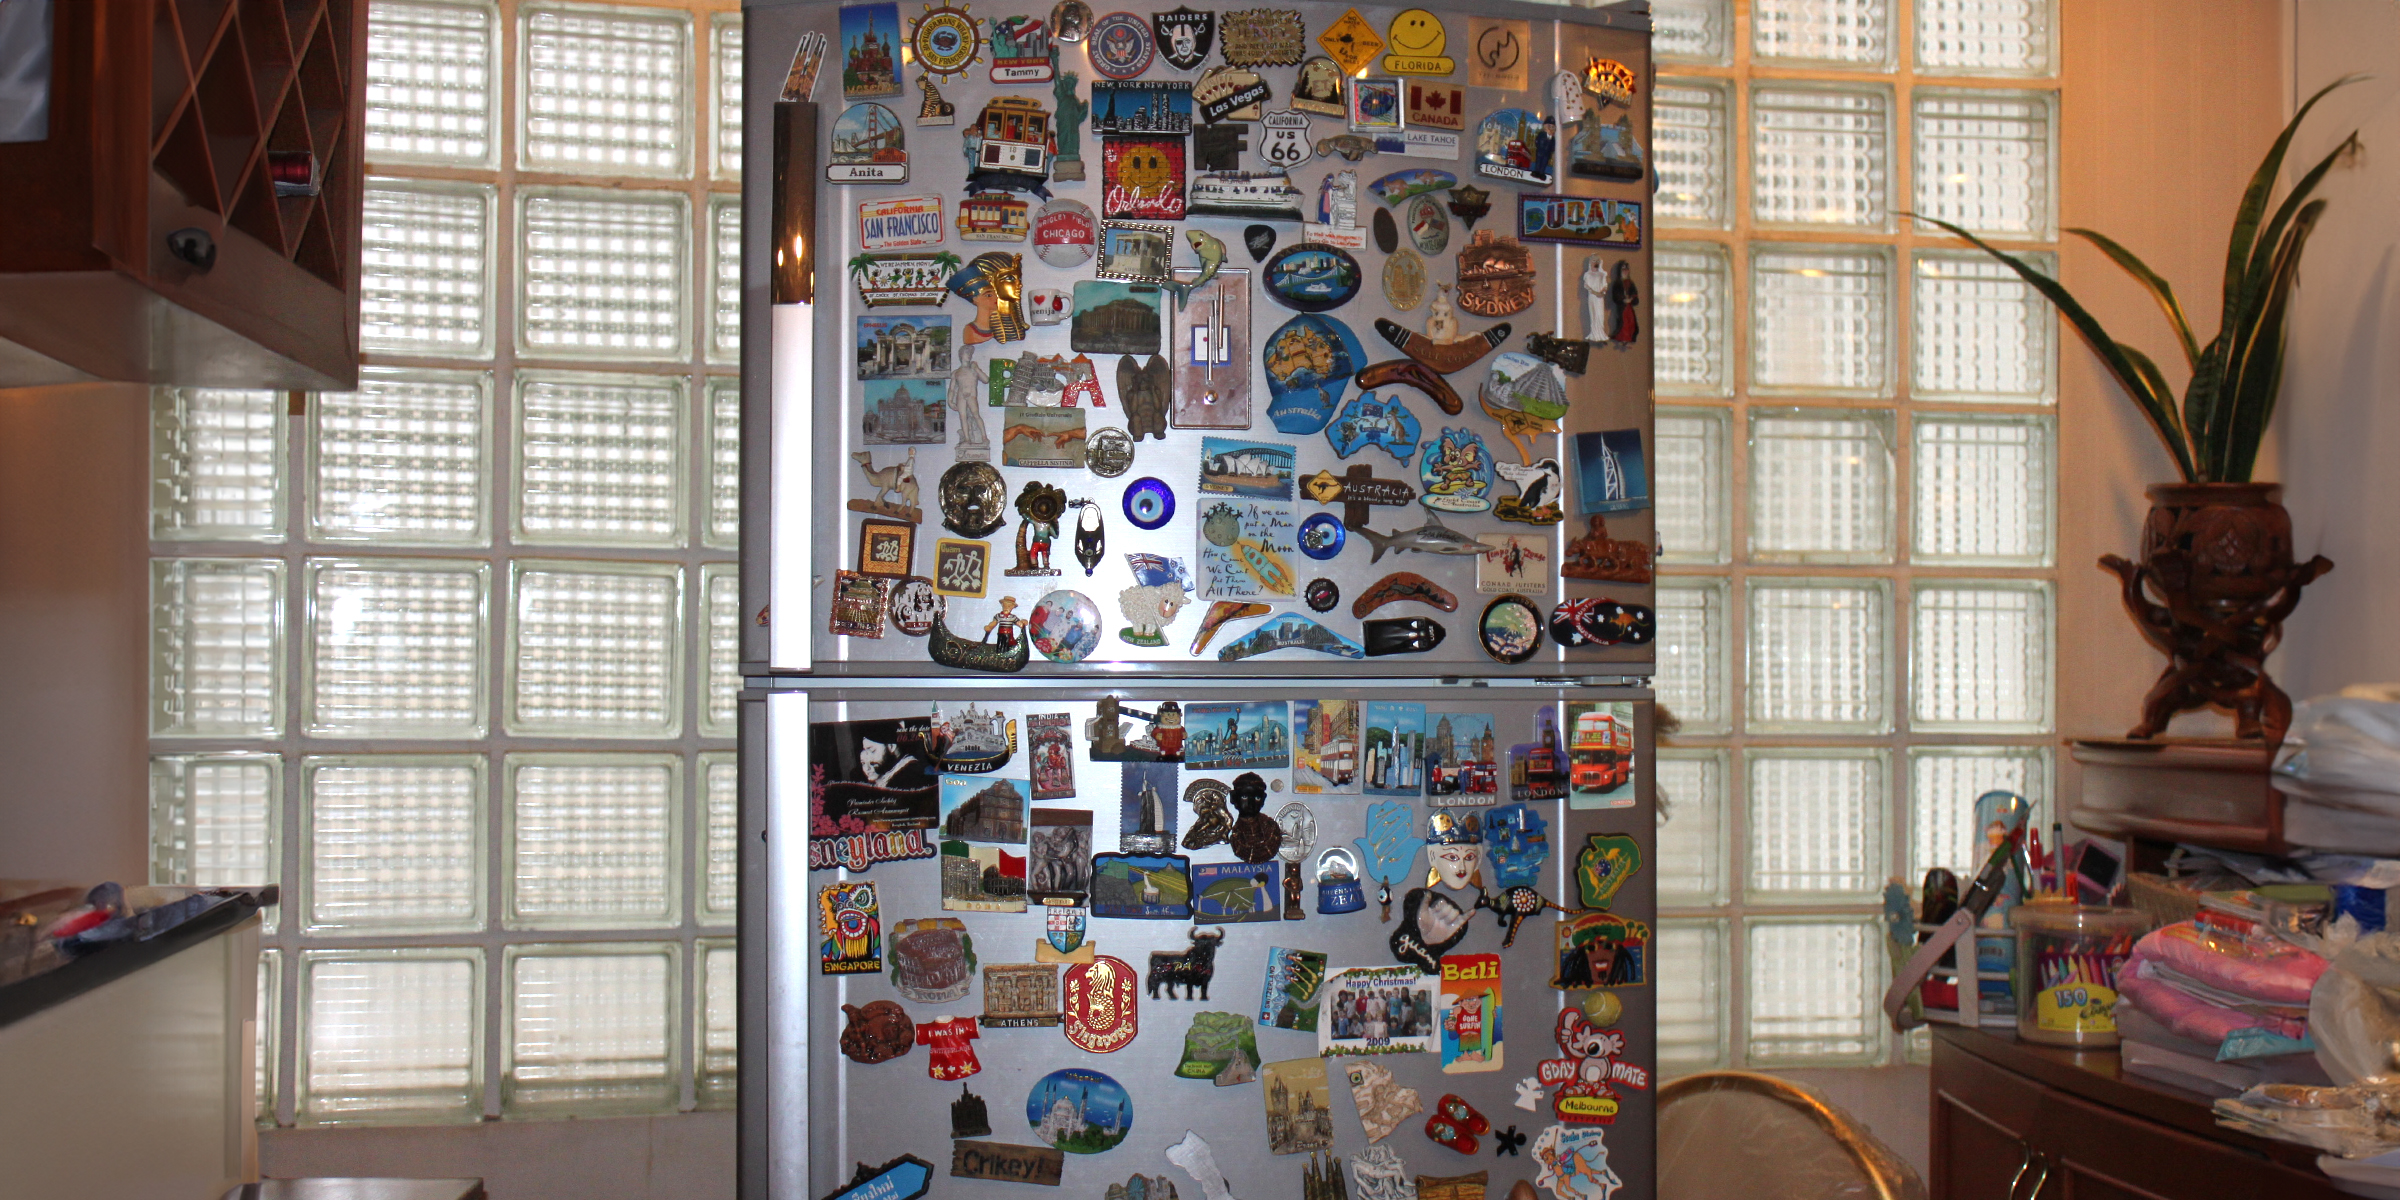 Un réfrigérateur couvert d'aimants | Source : Flickr.com/nist6ss/CC BY-SA 2.0